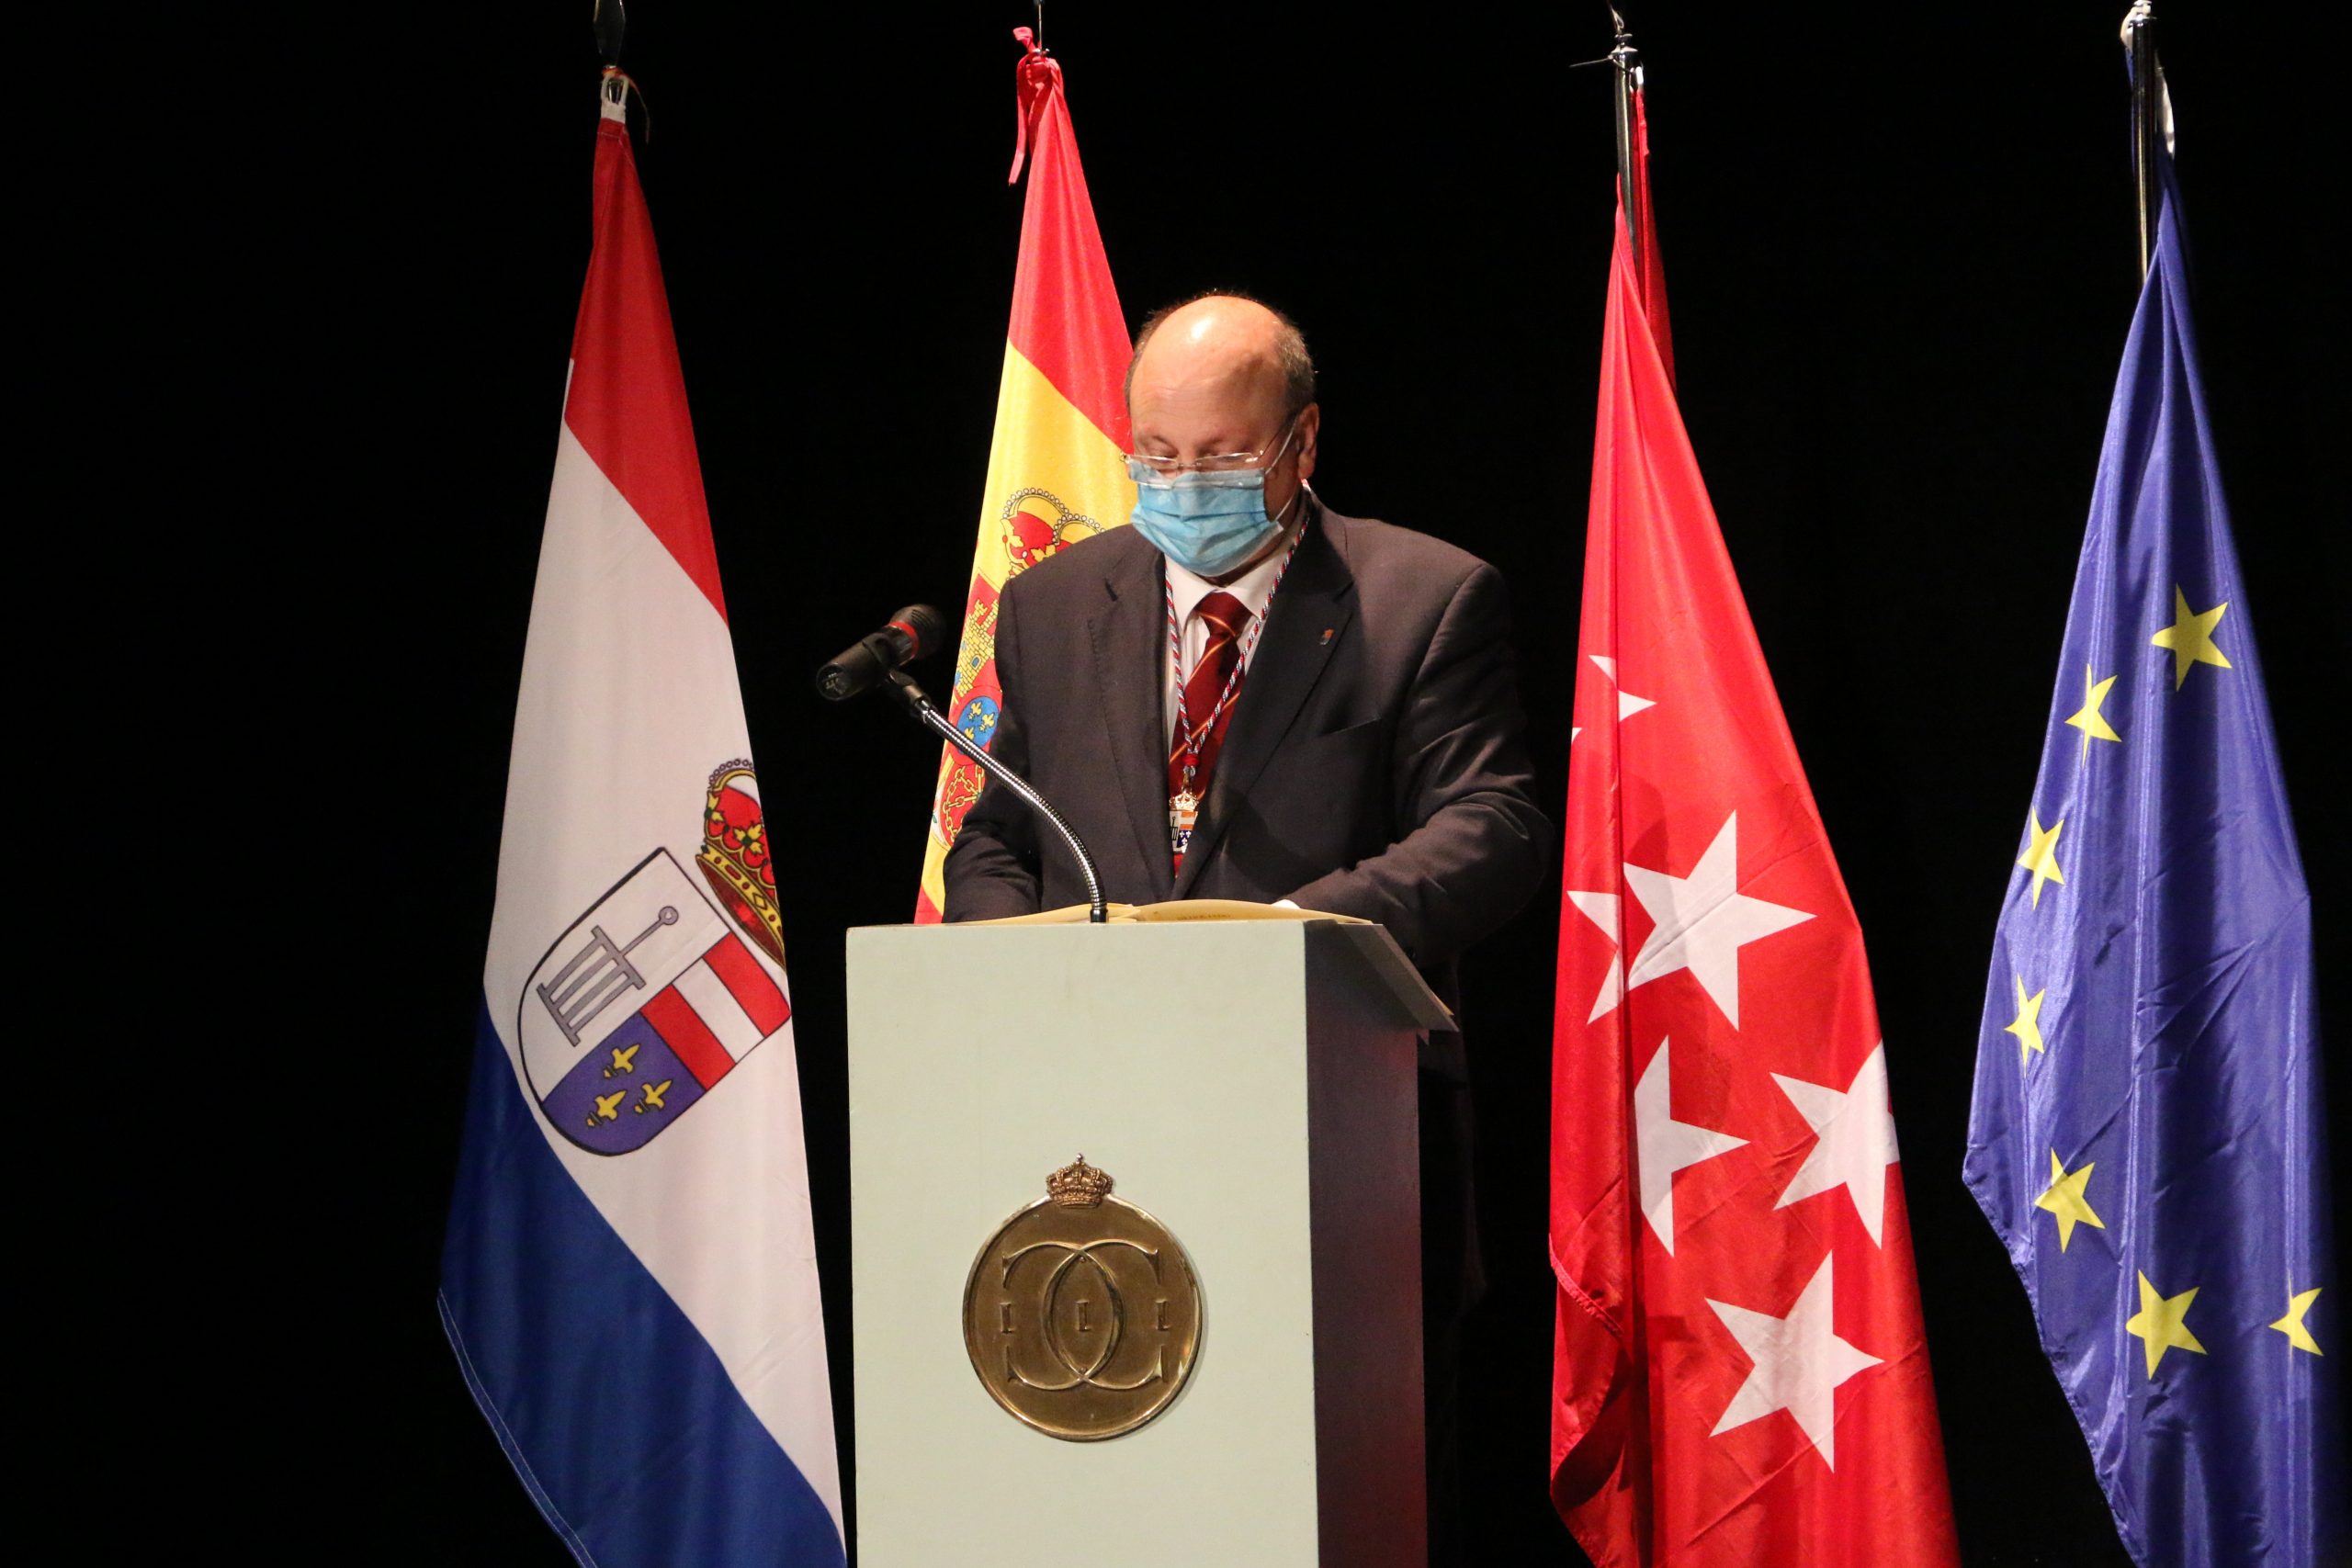 Acto de Honores y Distinciones - El Primer Teniente de Alcalde José Enrique París, en un momento de su discurso.